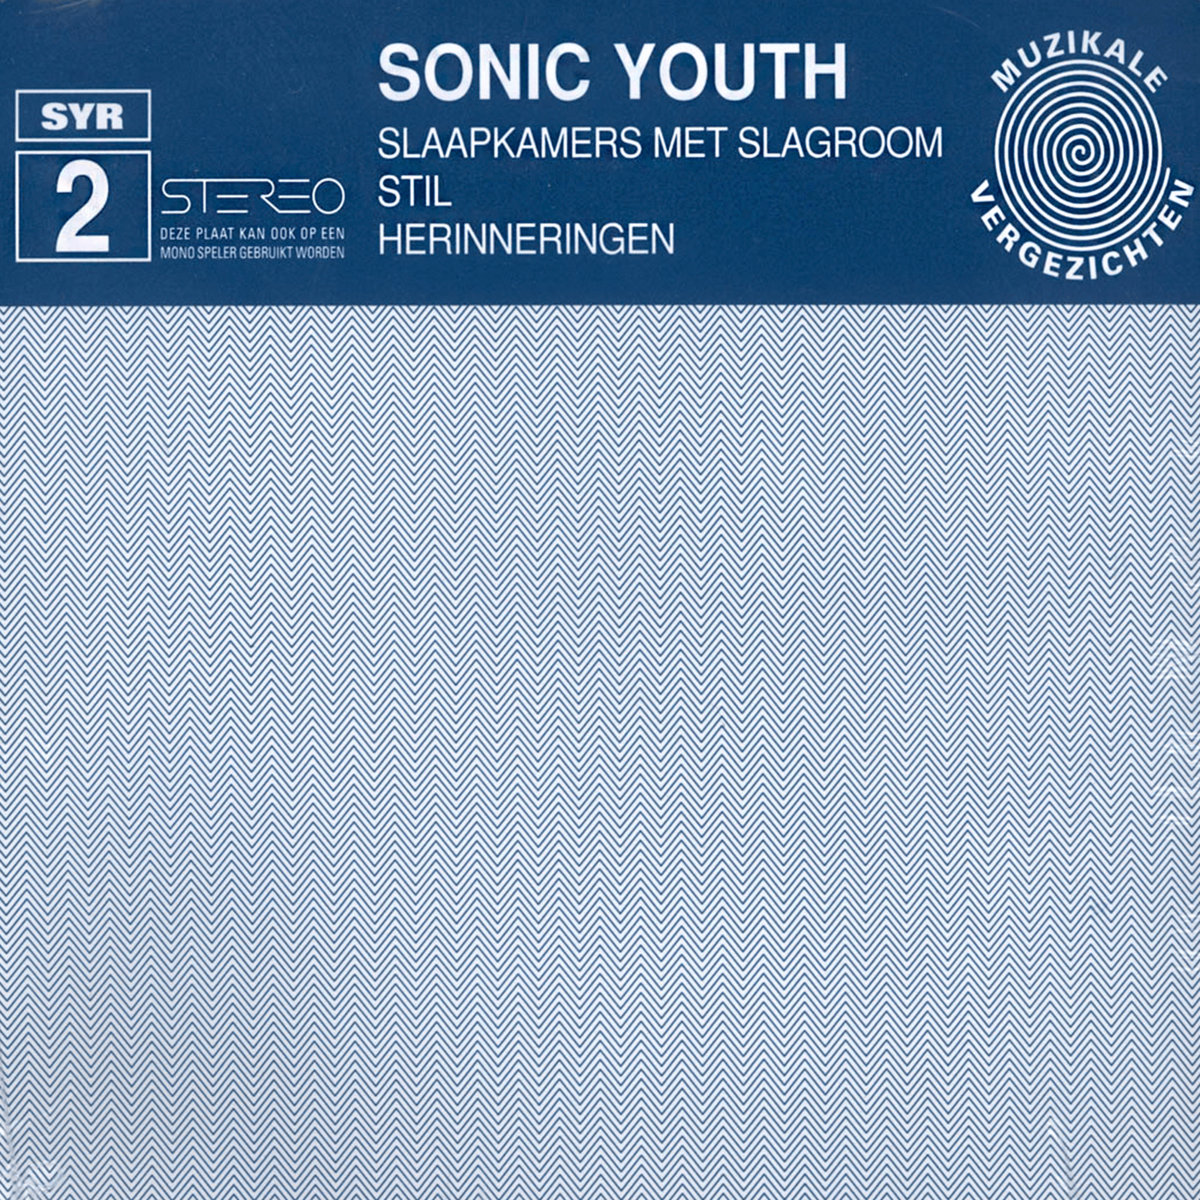 SYR 2 Slaapkamers Met Slagroom | Sonic Youth